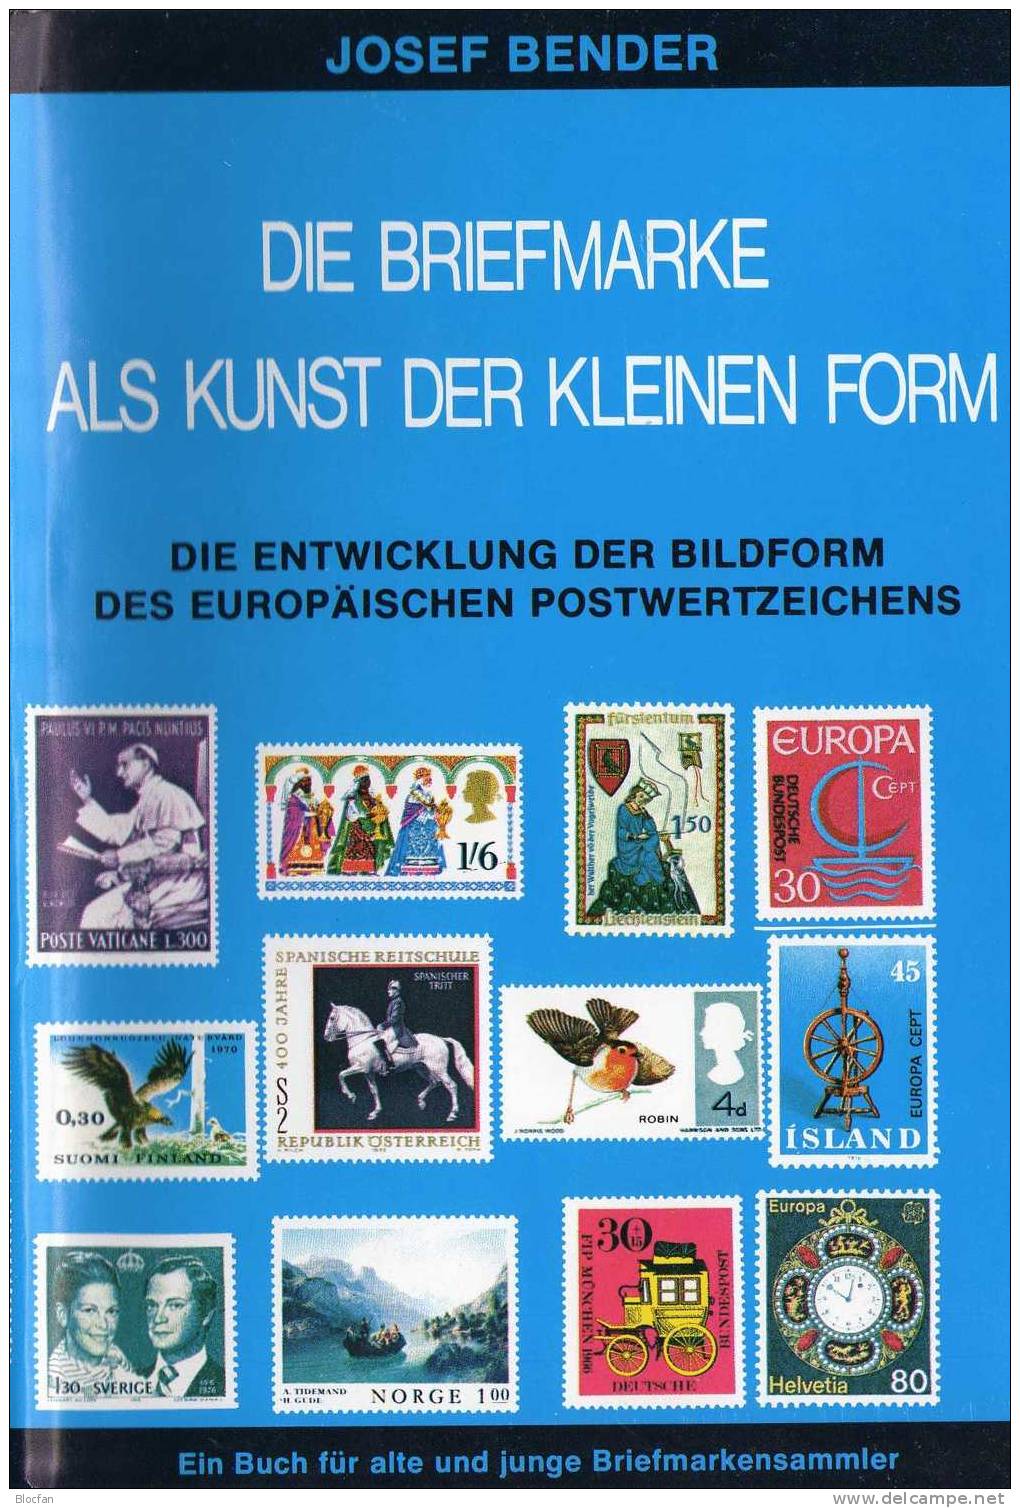 Fachbuch Für Sammler Die Briefmarke Als Kunst 1977 Antiquarisch 20€ Zum Entstehen Der Postwertzeichen Als Kunstwerk - Sammeln